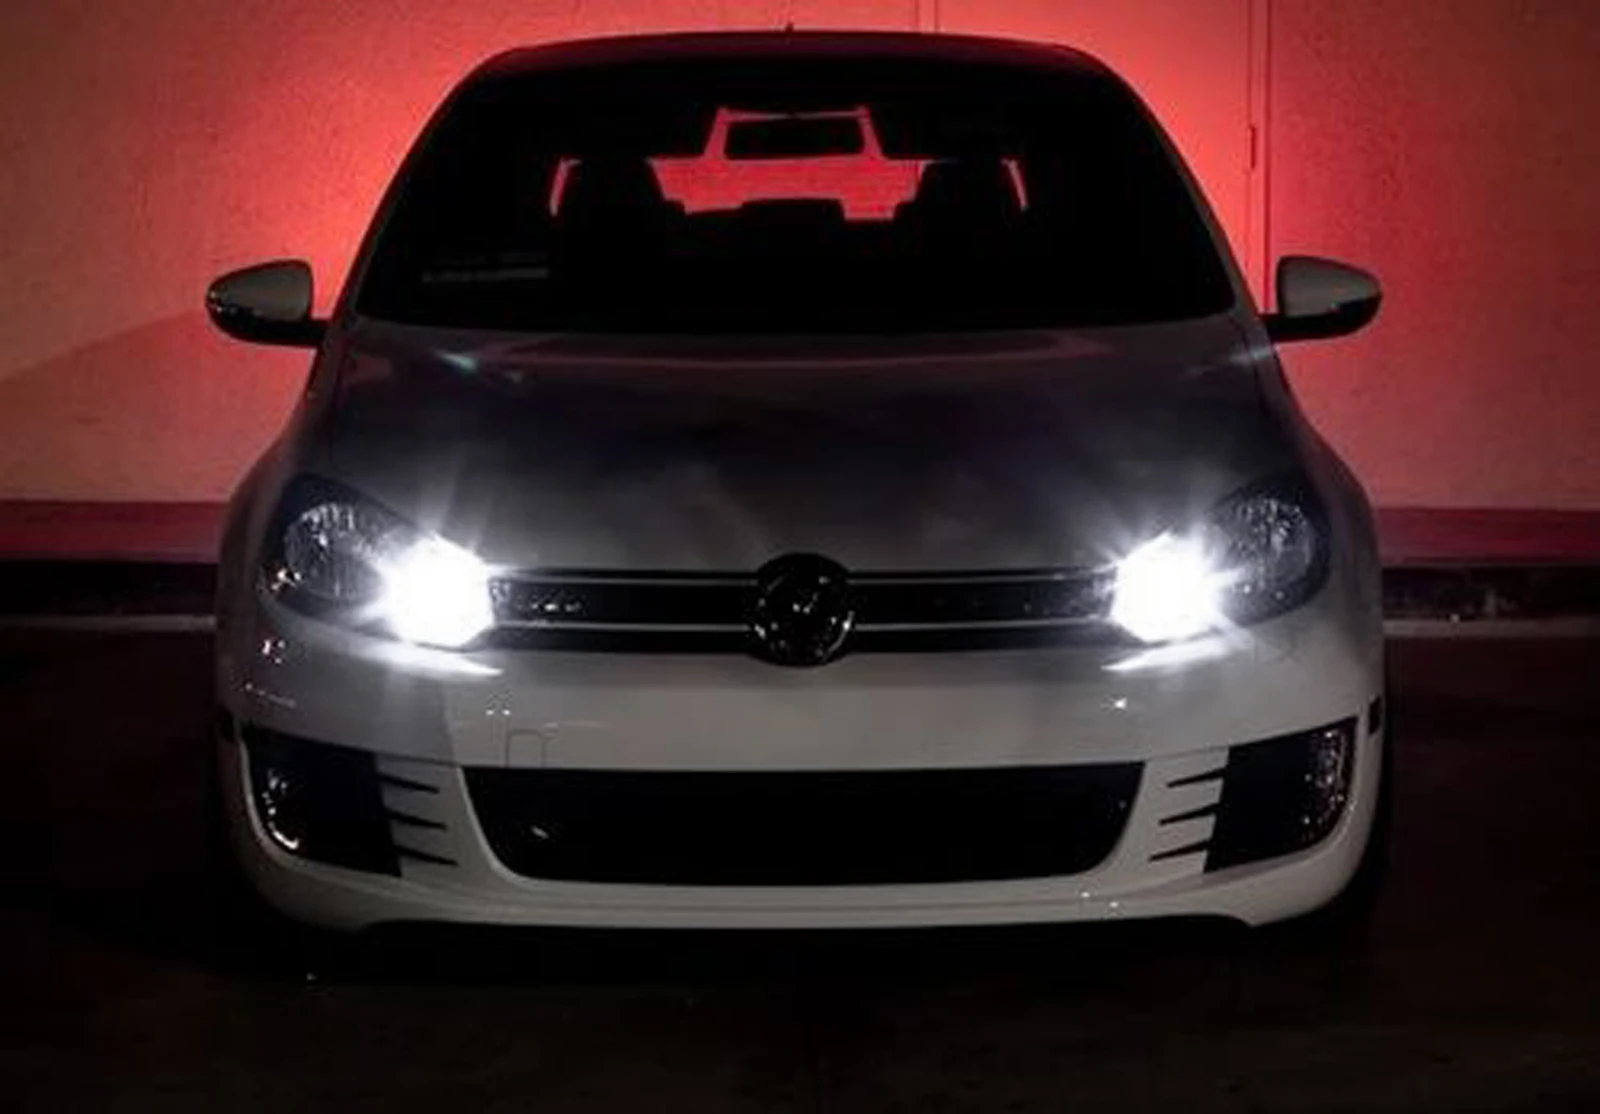 ANGRONG 2x30 Вт 1600lm H15 64176 SAMSUNG светодиодный светильник на голову, дневной ходовой светильник, лампа для Audi BMW VW Ford Fiesta